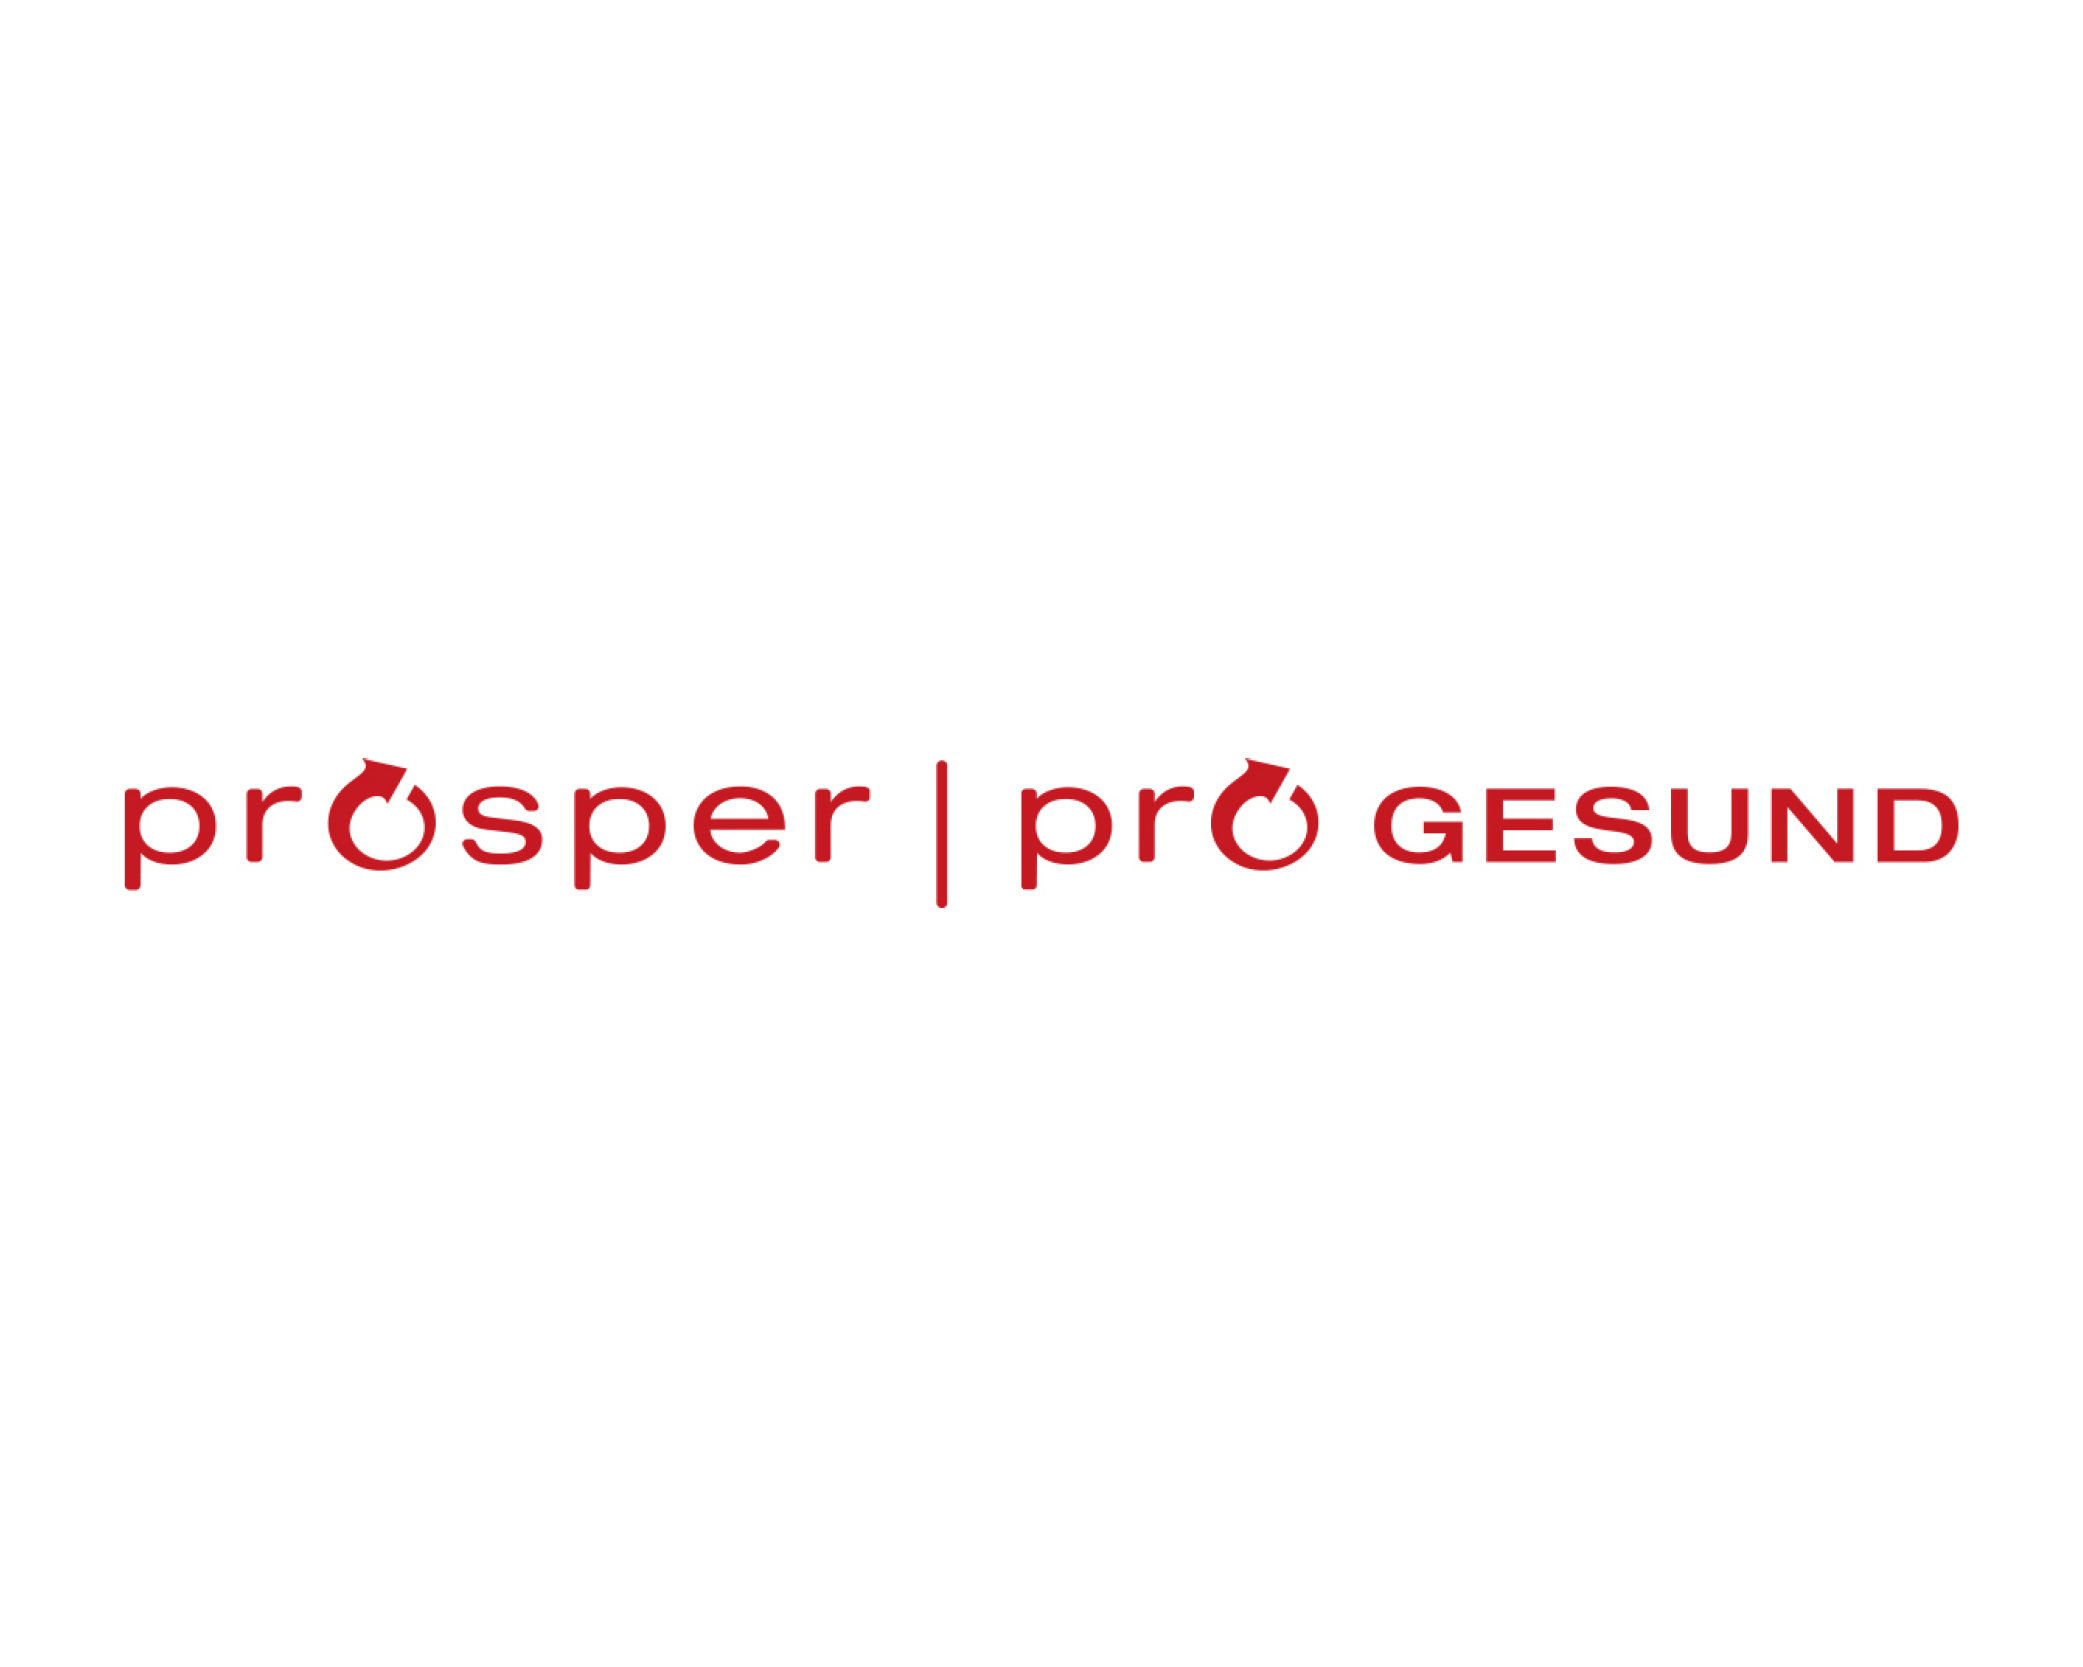 Log GEsundheitsnetz - Prosper/progesund